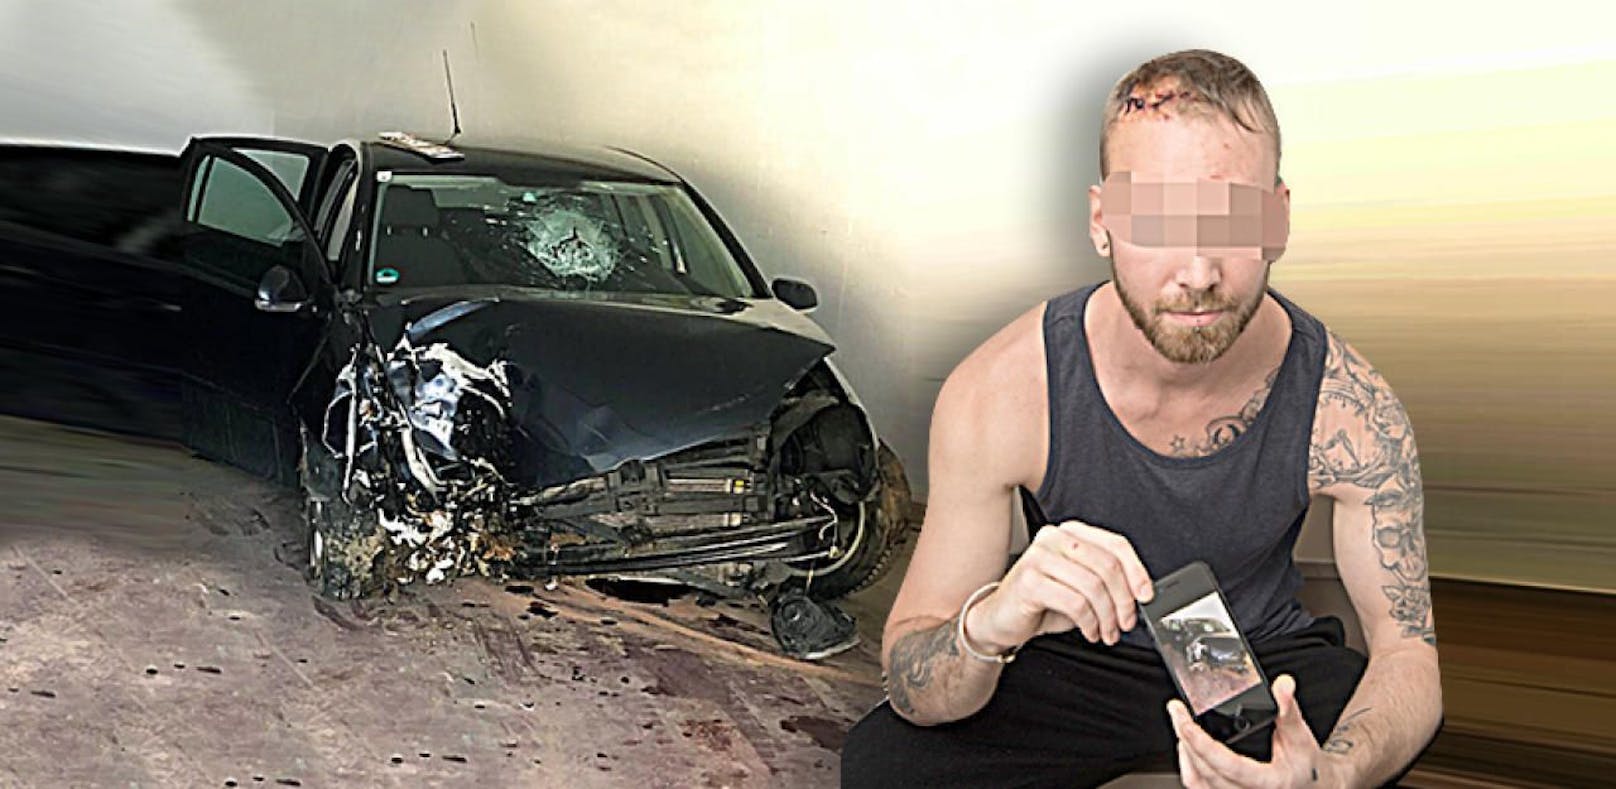 Unfall-Lenker (30) jagt im Internet Fahrerflüchtigen